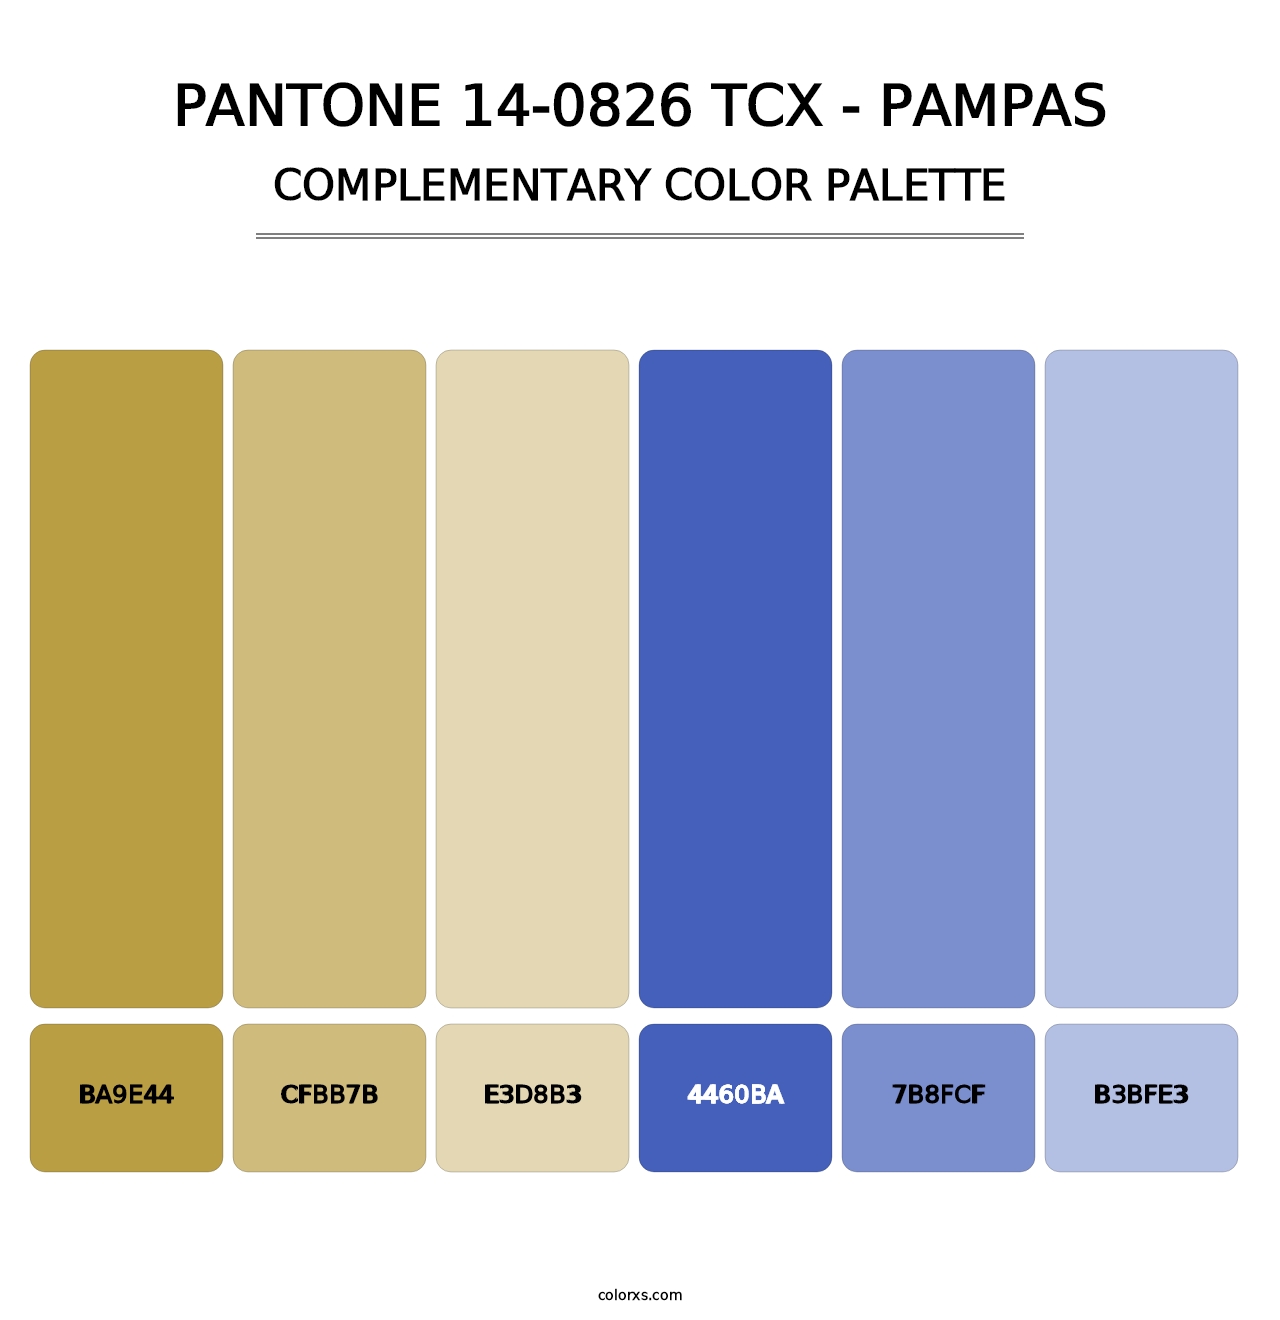 PANTONE 14-0826 TCX - Pampas - Complementary Color Palette